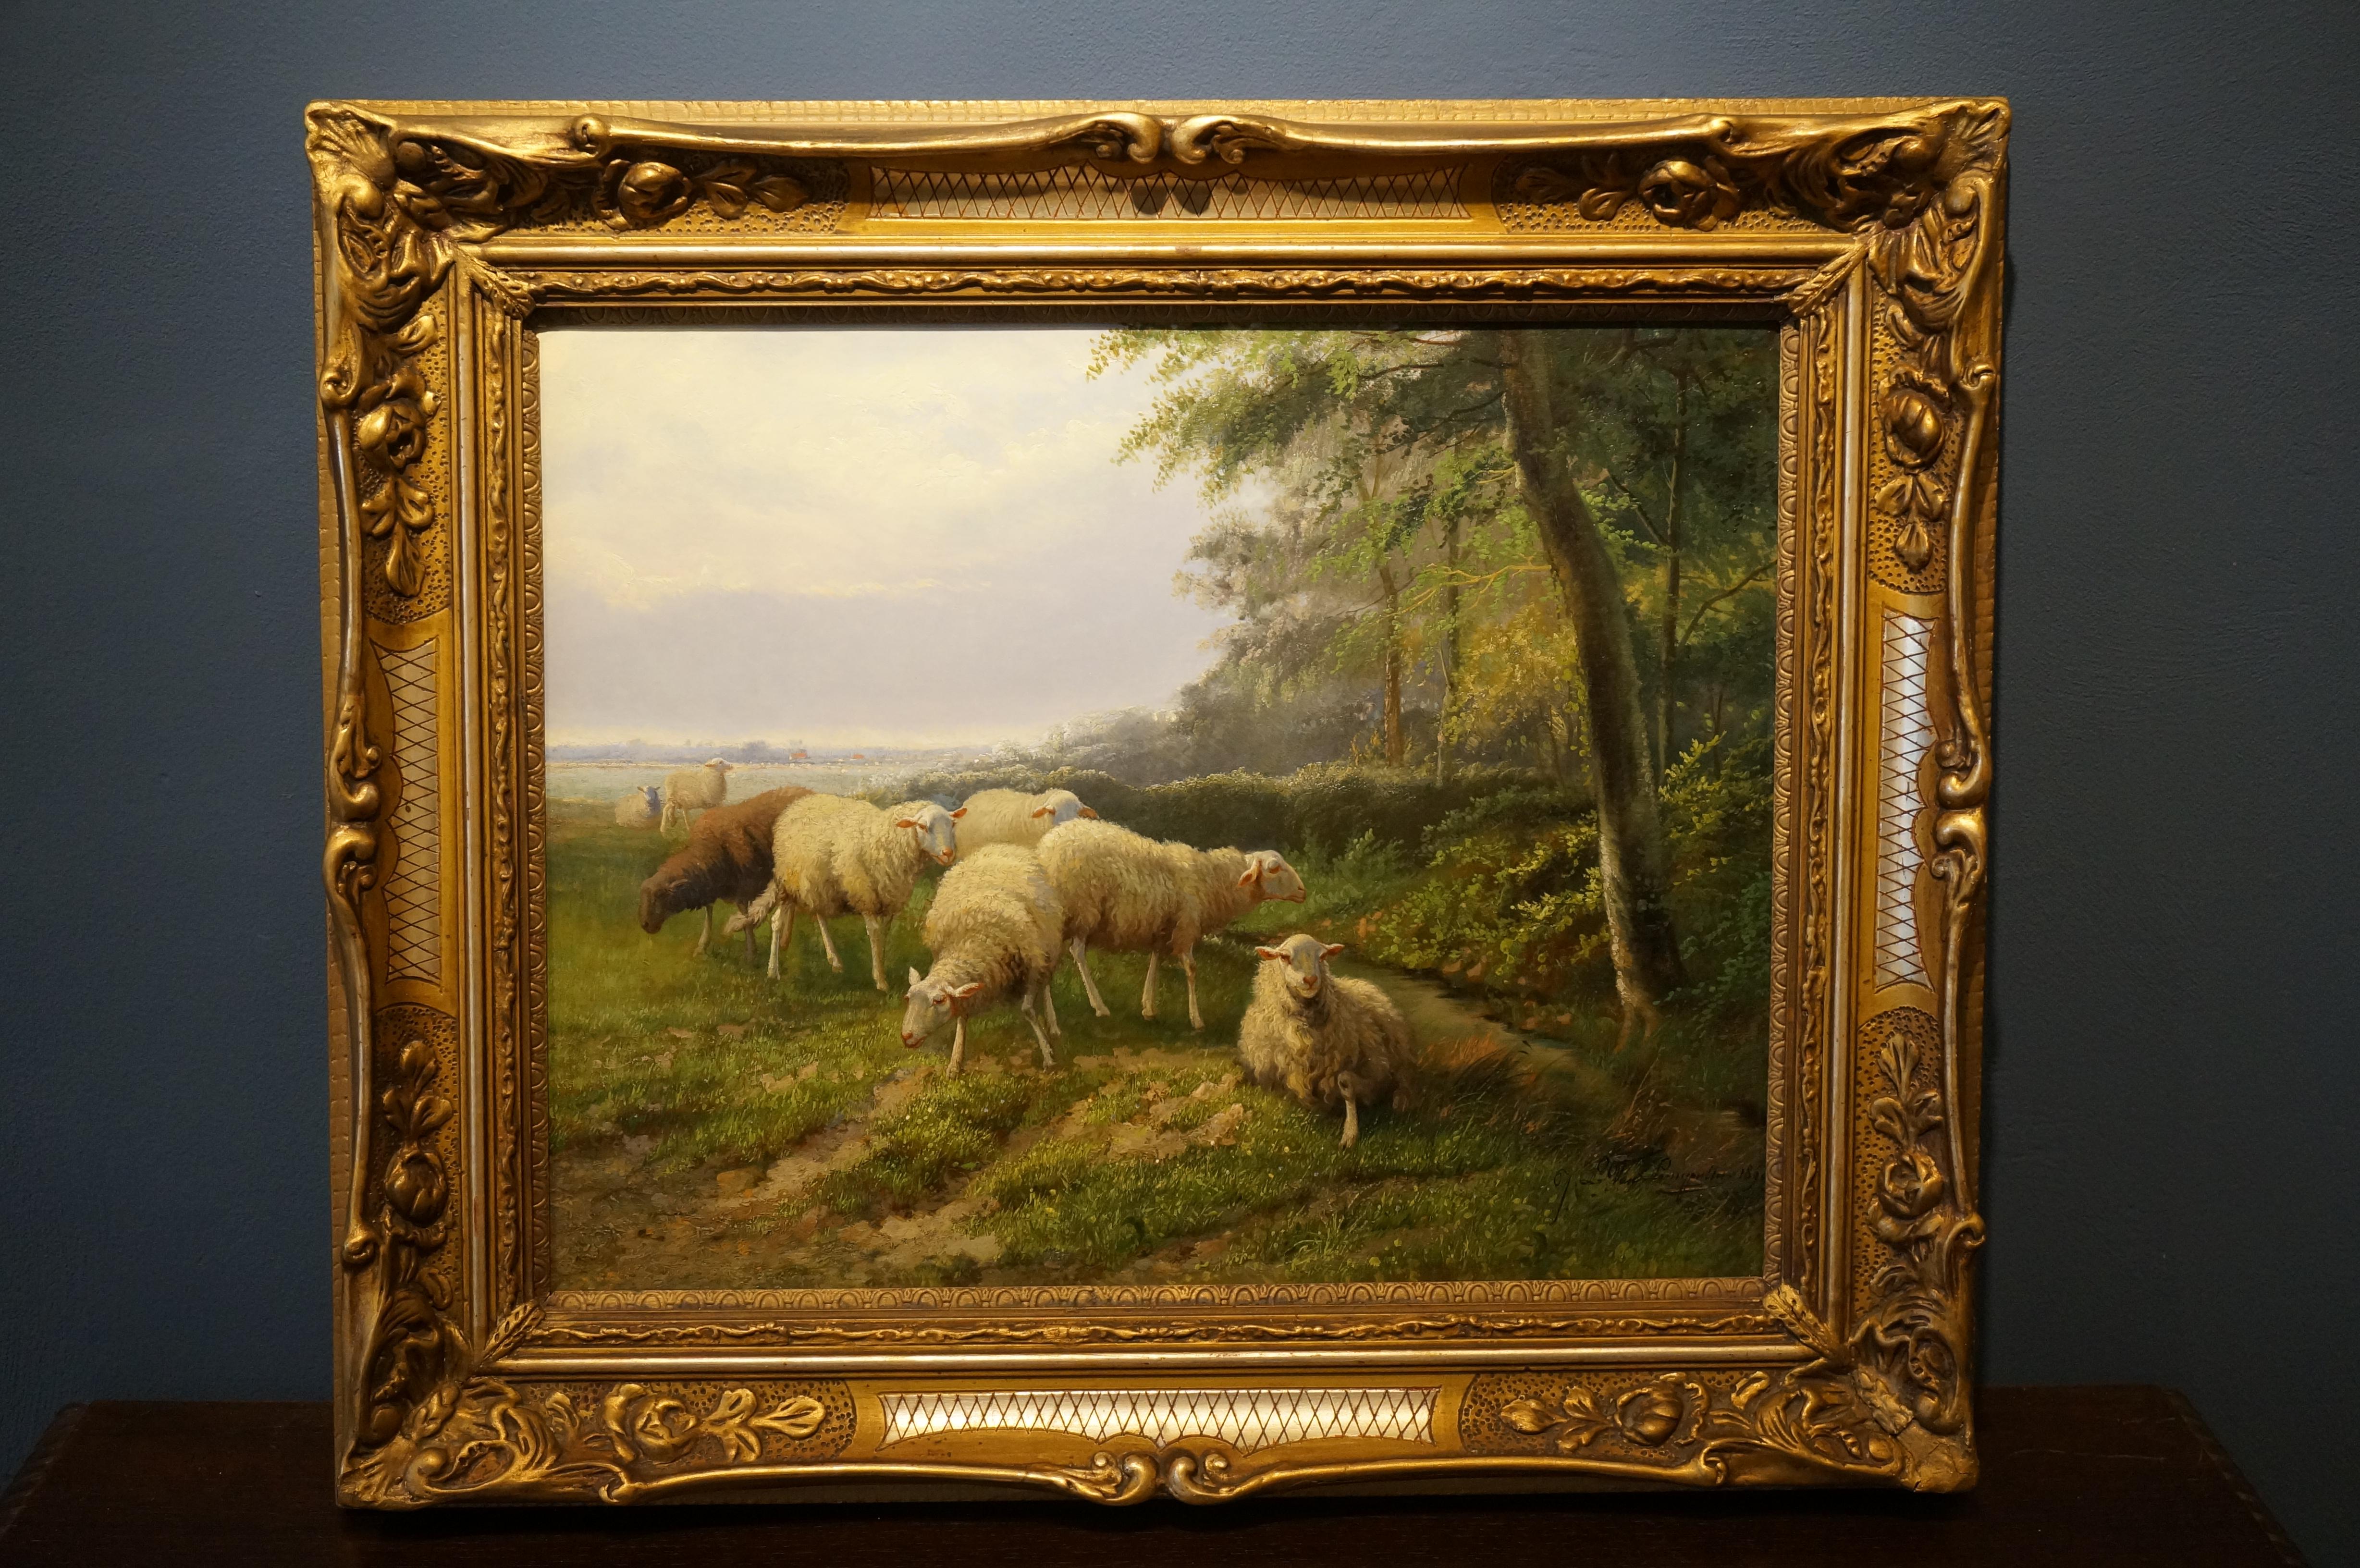 Landschaft mit Schafsfisch, romantisches Ölgemälde auf Leinwand, Belgien, 1890 (Romantik), Painting, von Jef Louis van Leemputten